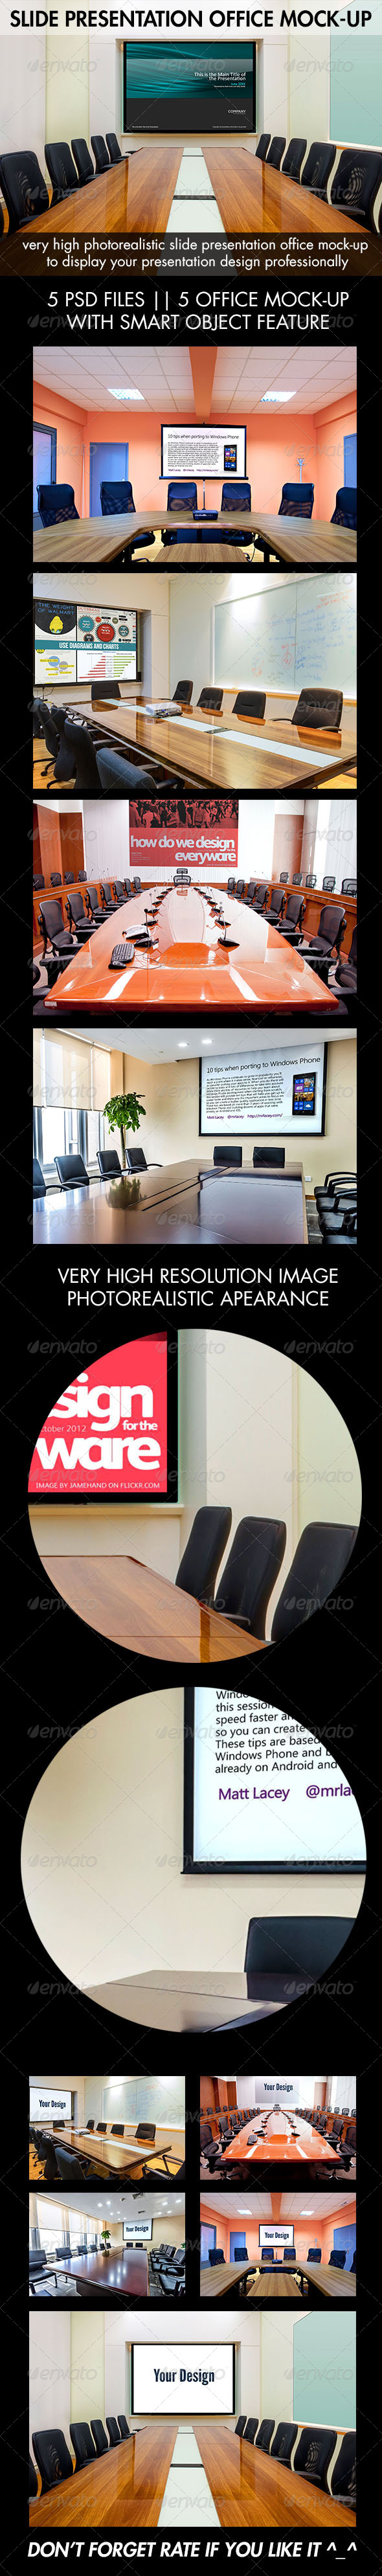 8737289 - Slide Presentation Office Mock-Up.jpg